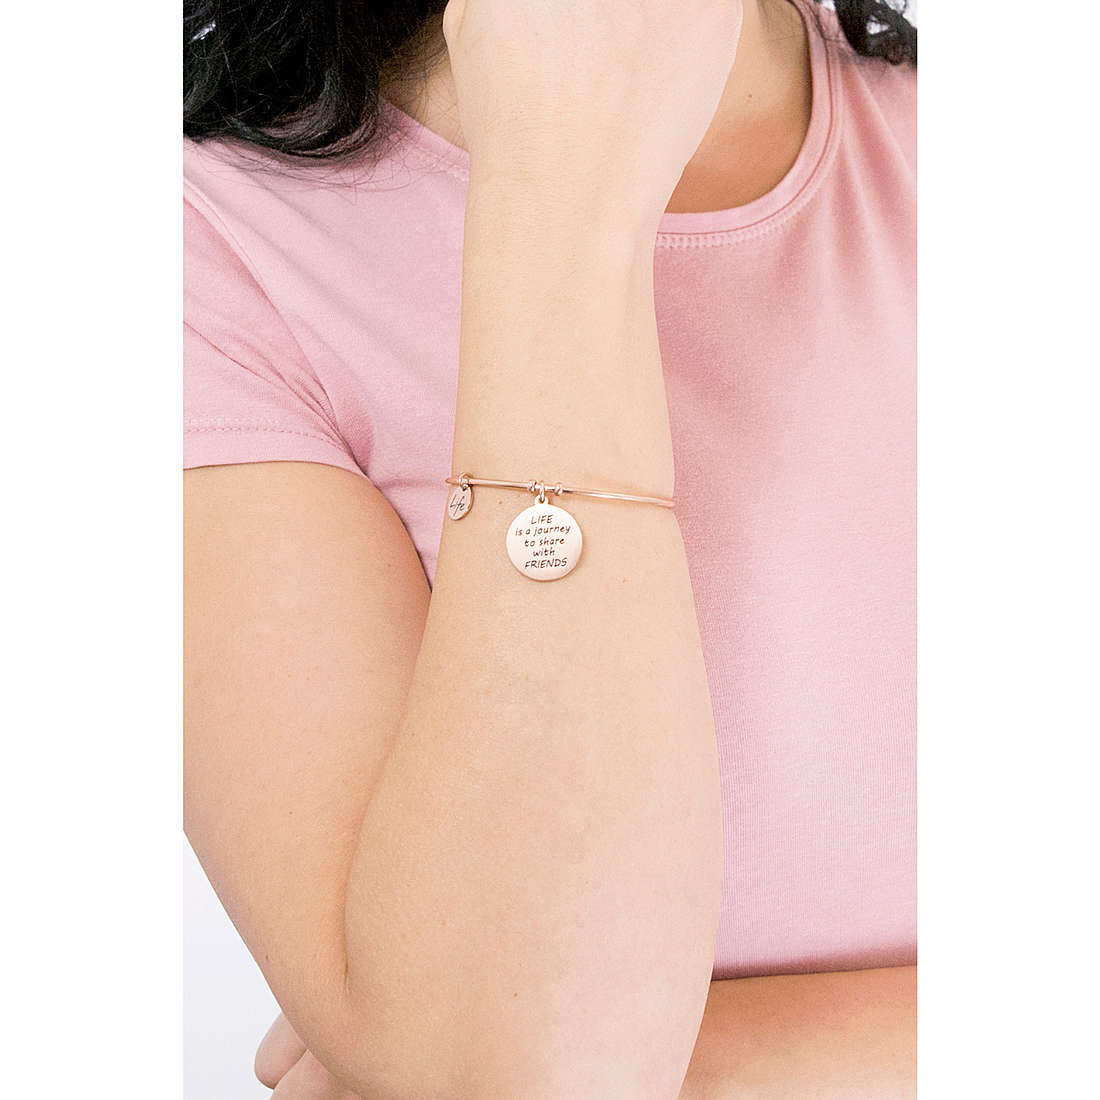 Kidult bracelets Love woman 731639 wearing